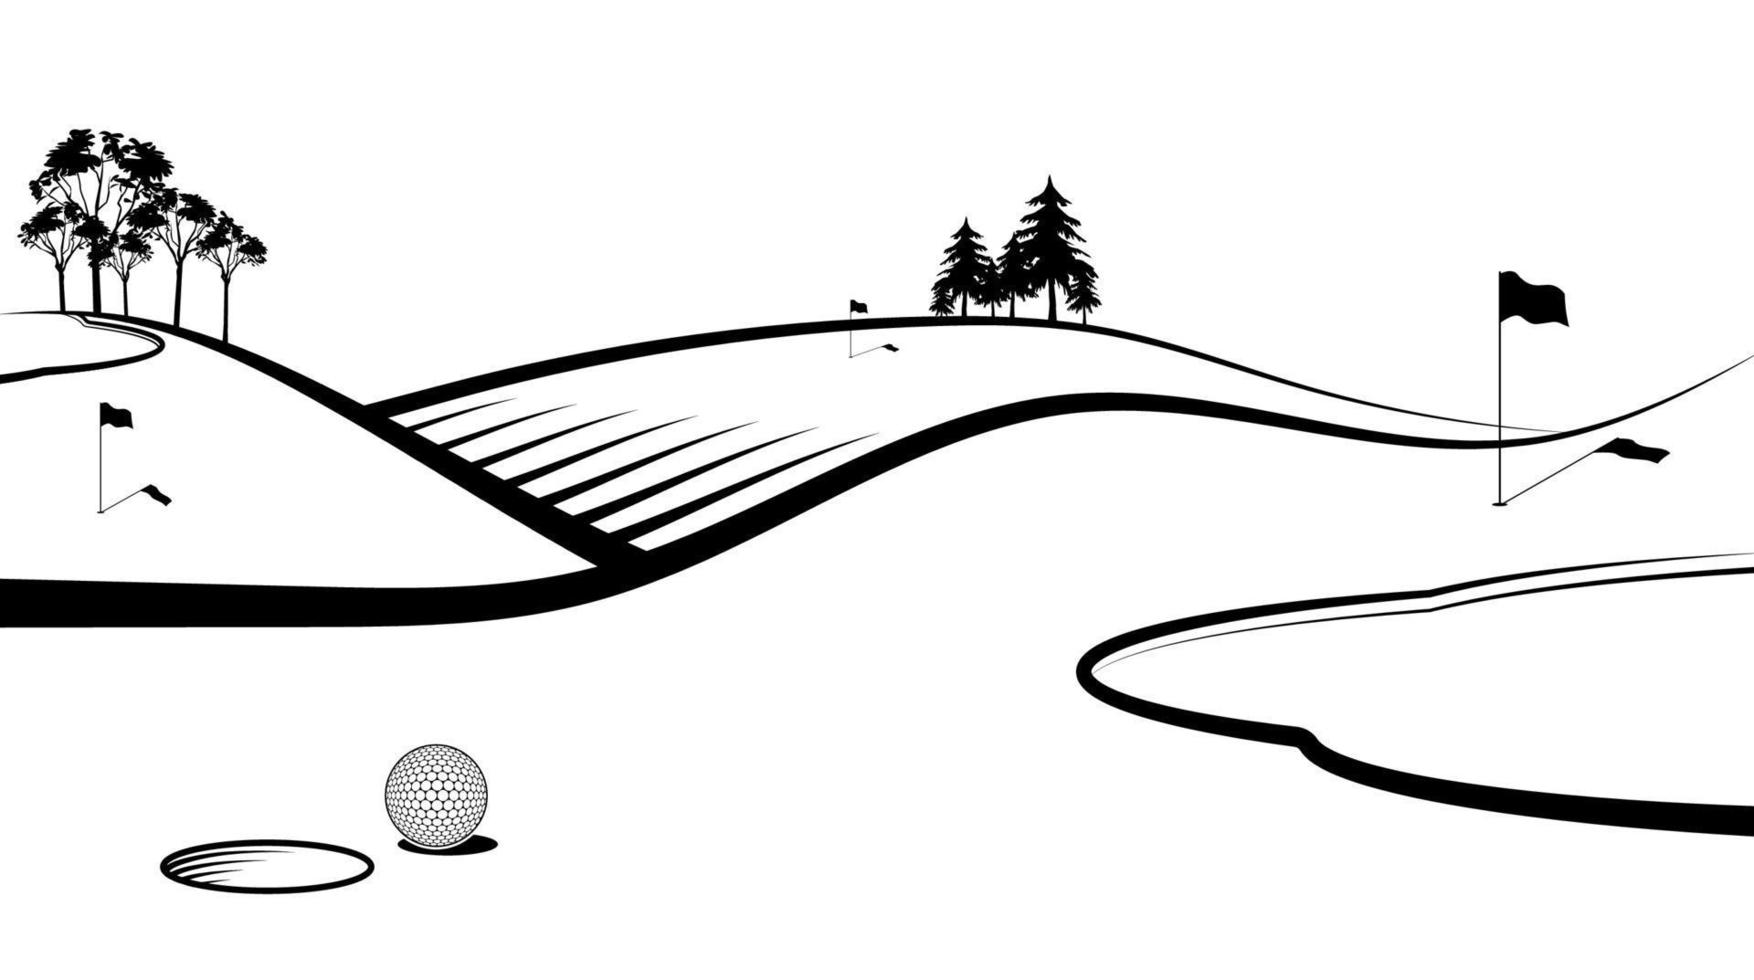 bola esportiva para golfe na frente do buraco com bandeiras no campo esportivo. banner, fundo para design de competições. estilo de vida saudável. vetor